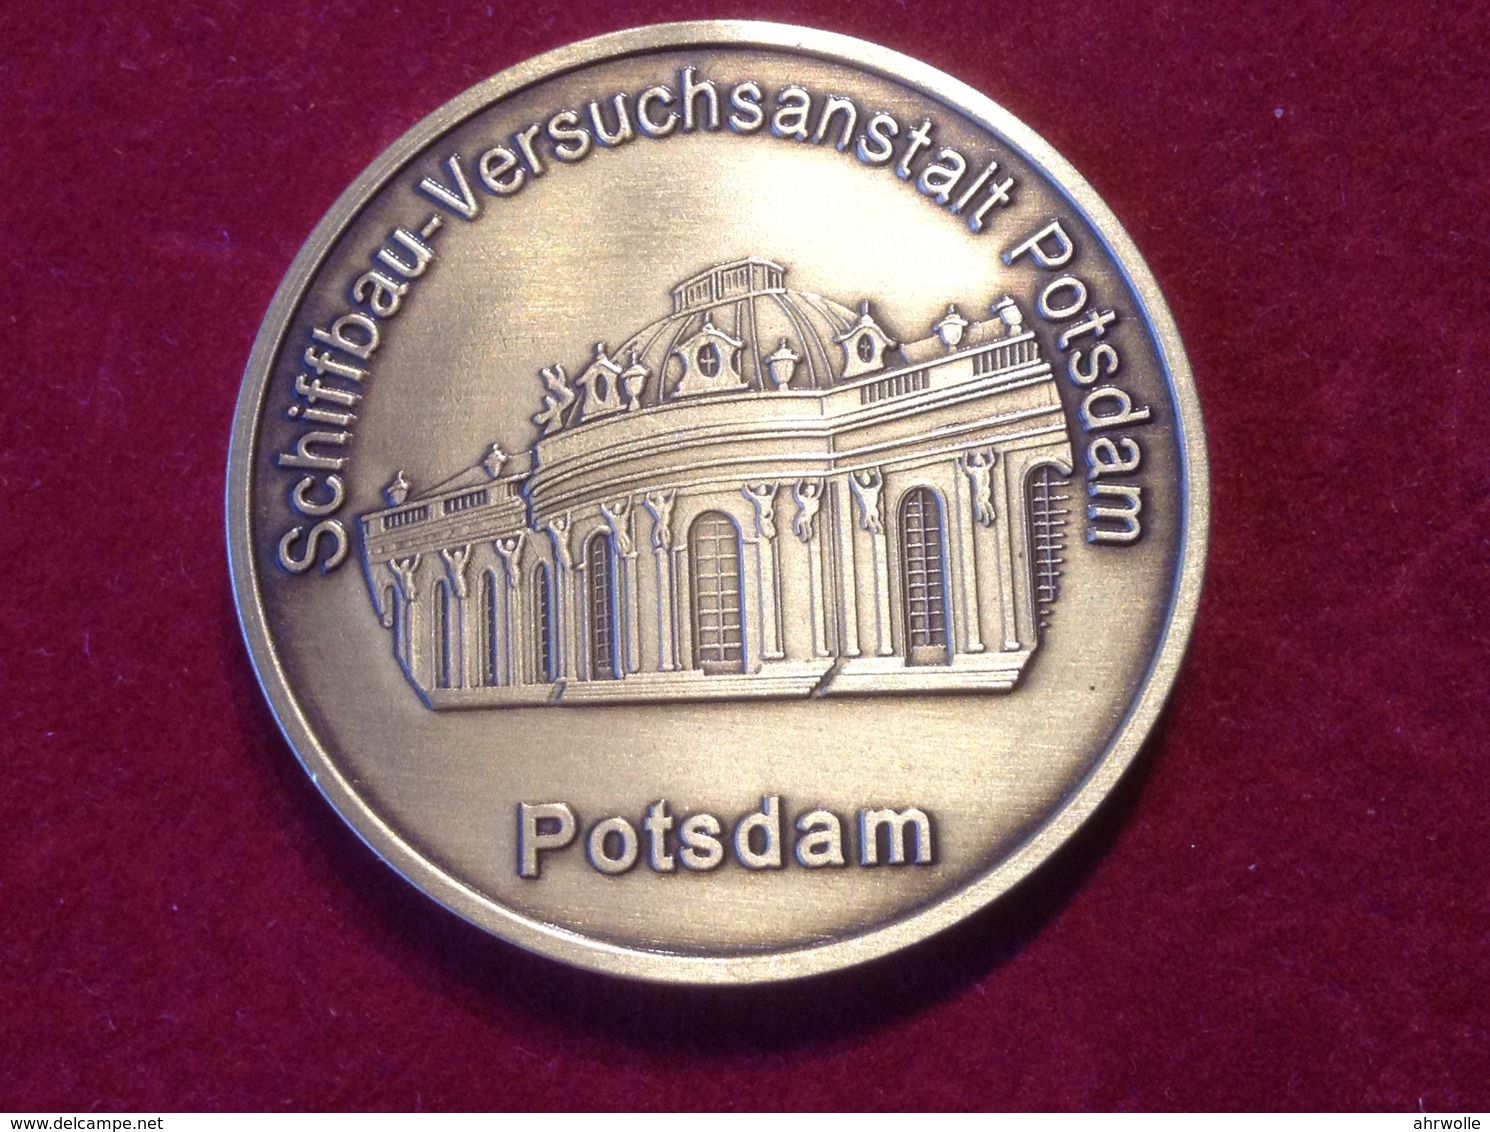 Medaille Schiffbau Versuchsanstalt Potsdam 2003 Erster Schleppwagen - Monedas Elongadas (elongated Coins)